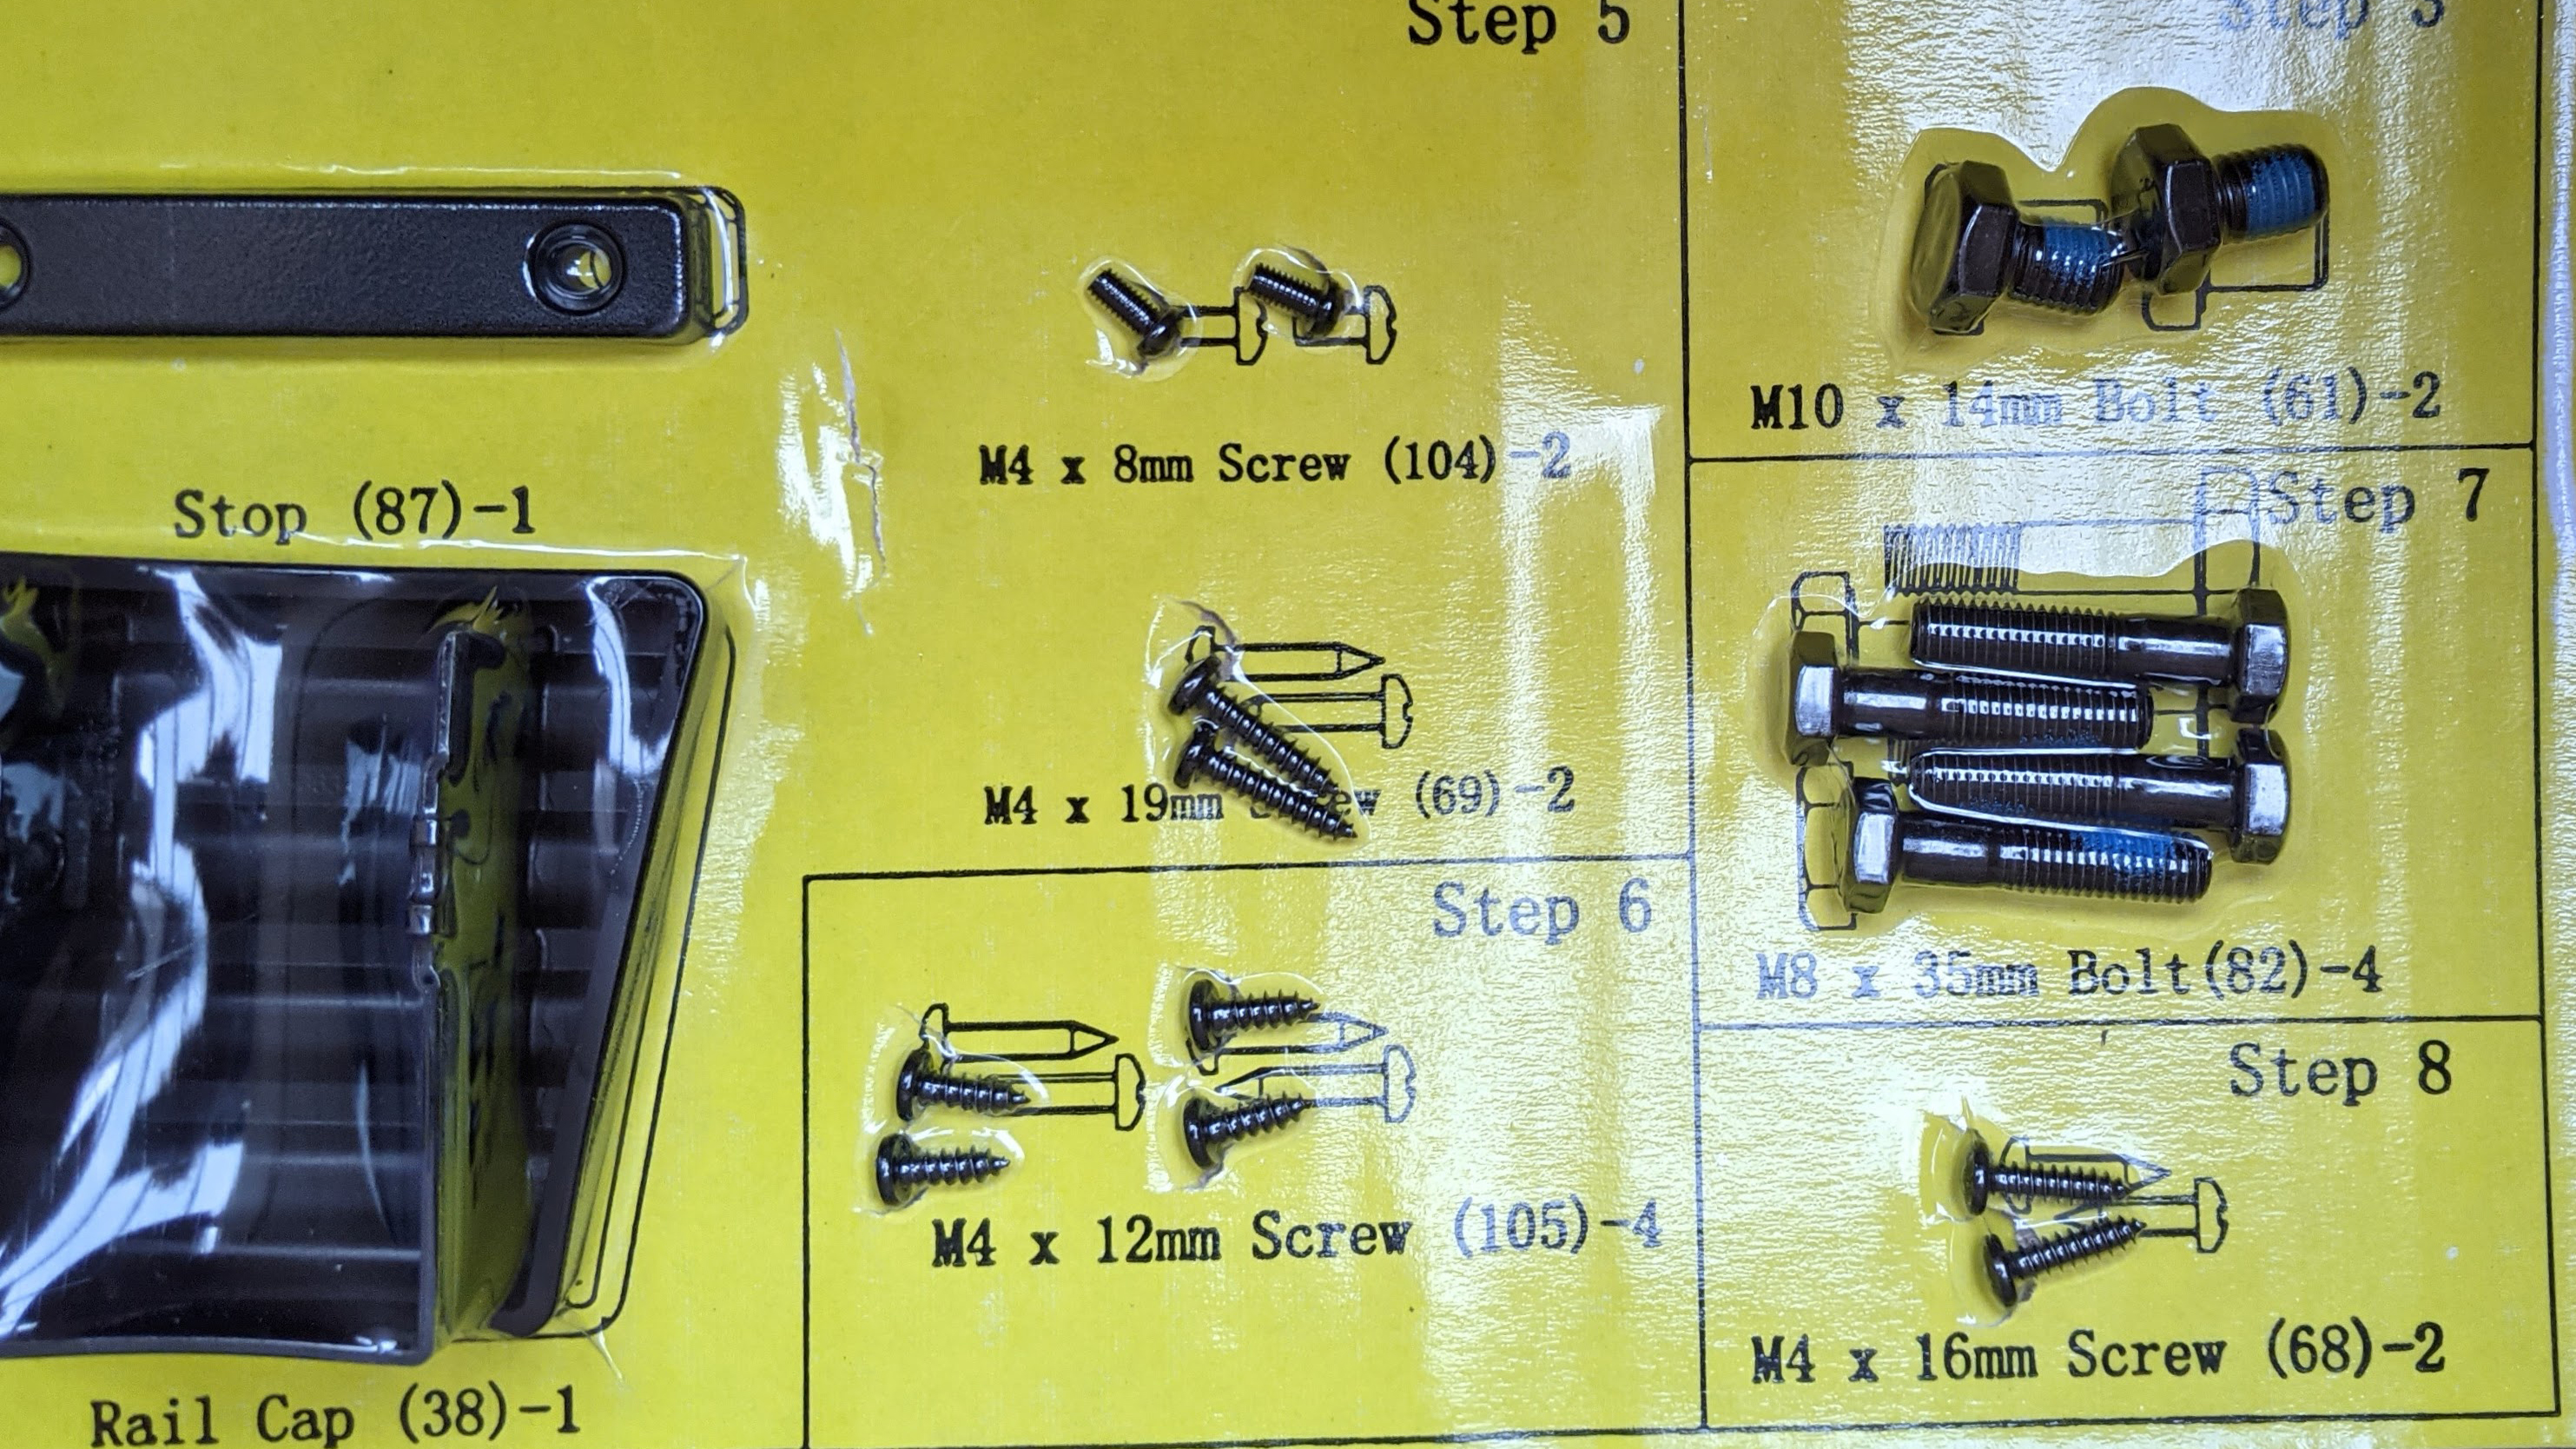 Vacuum packed screws